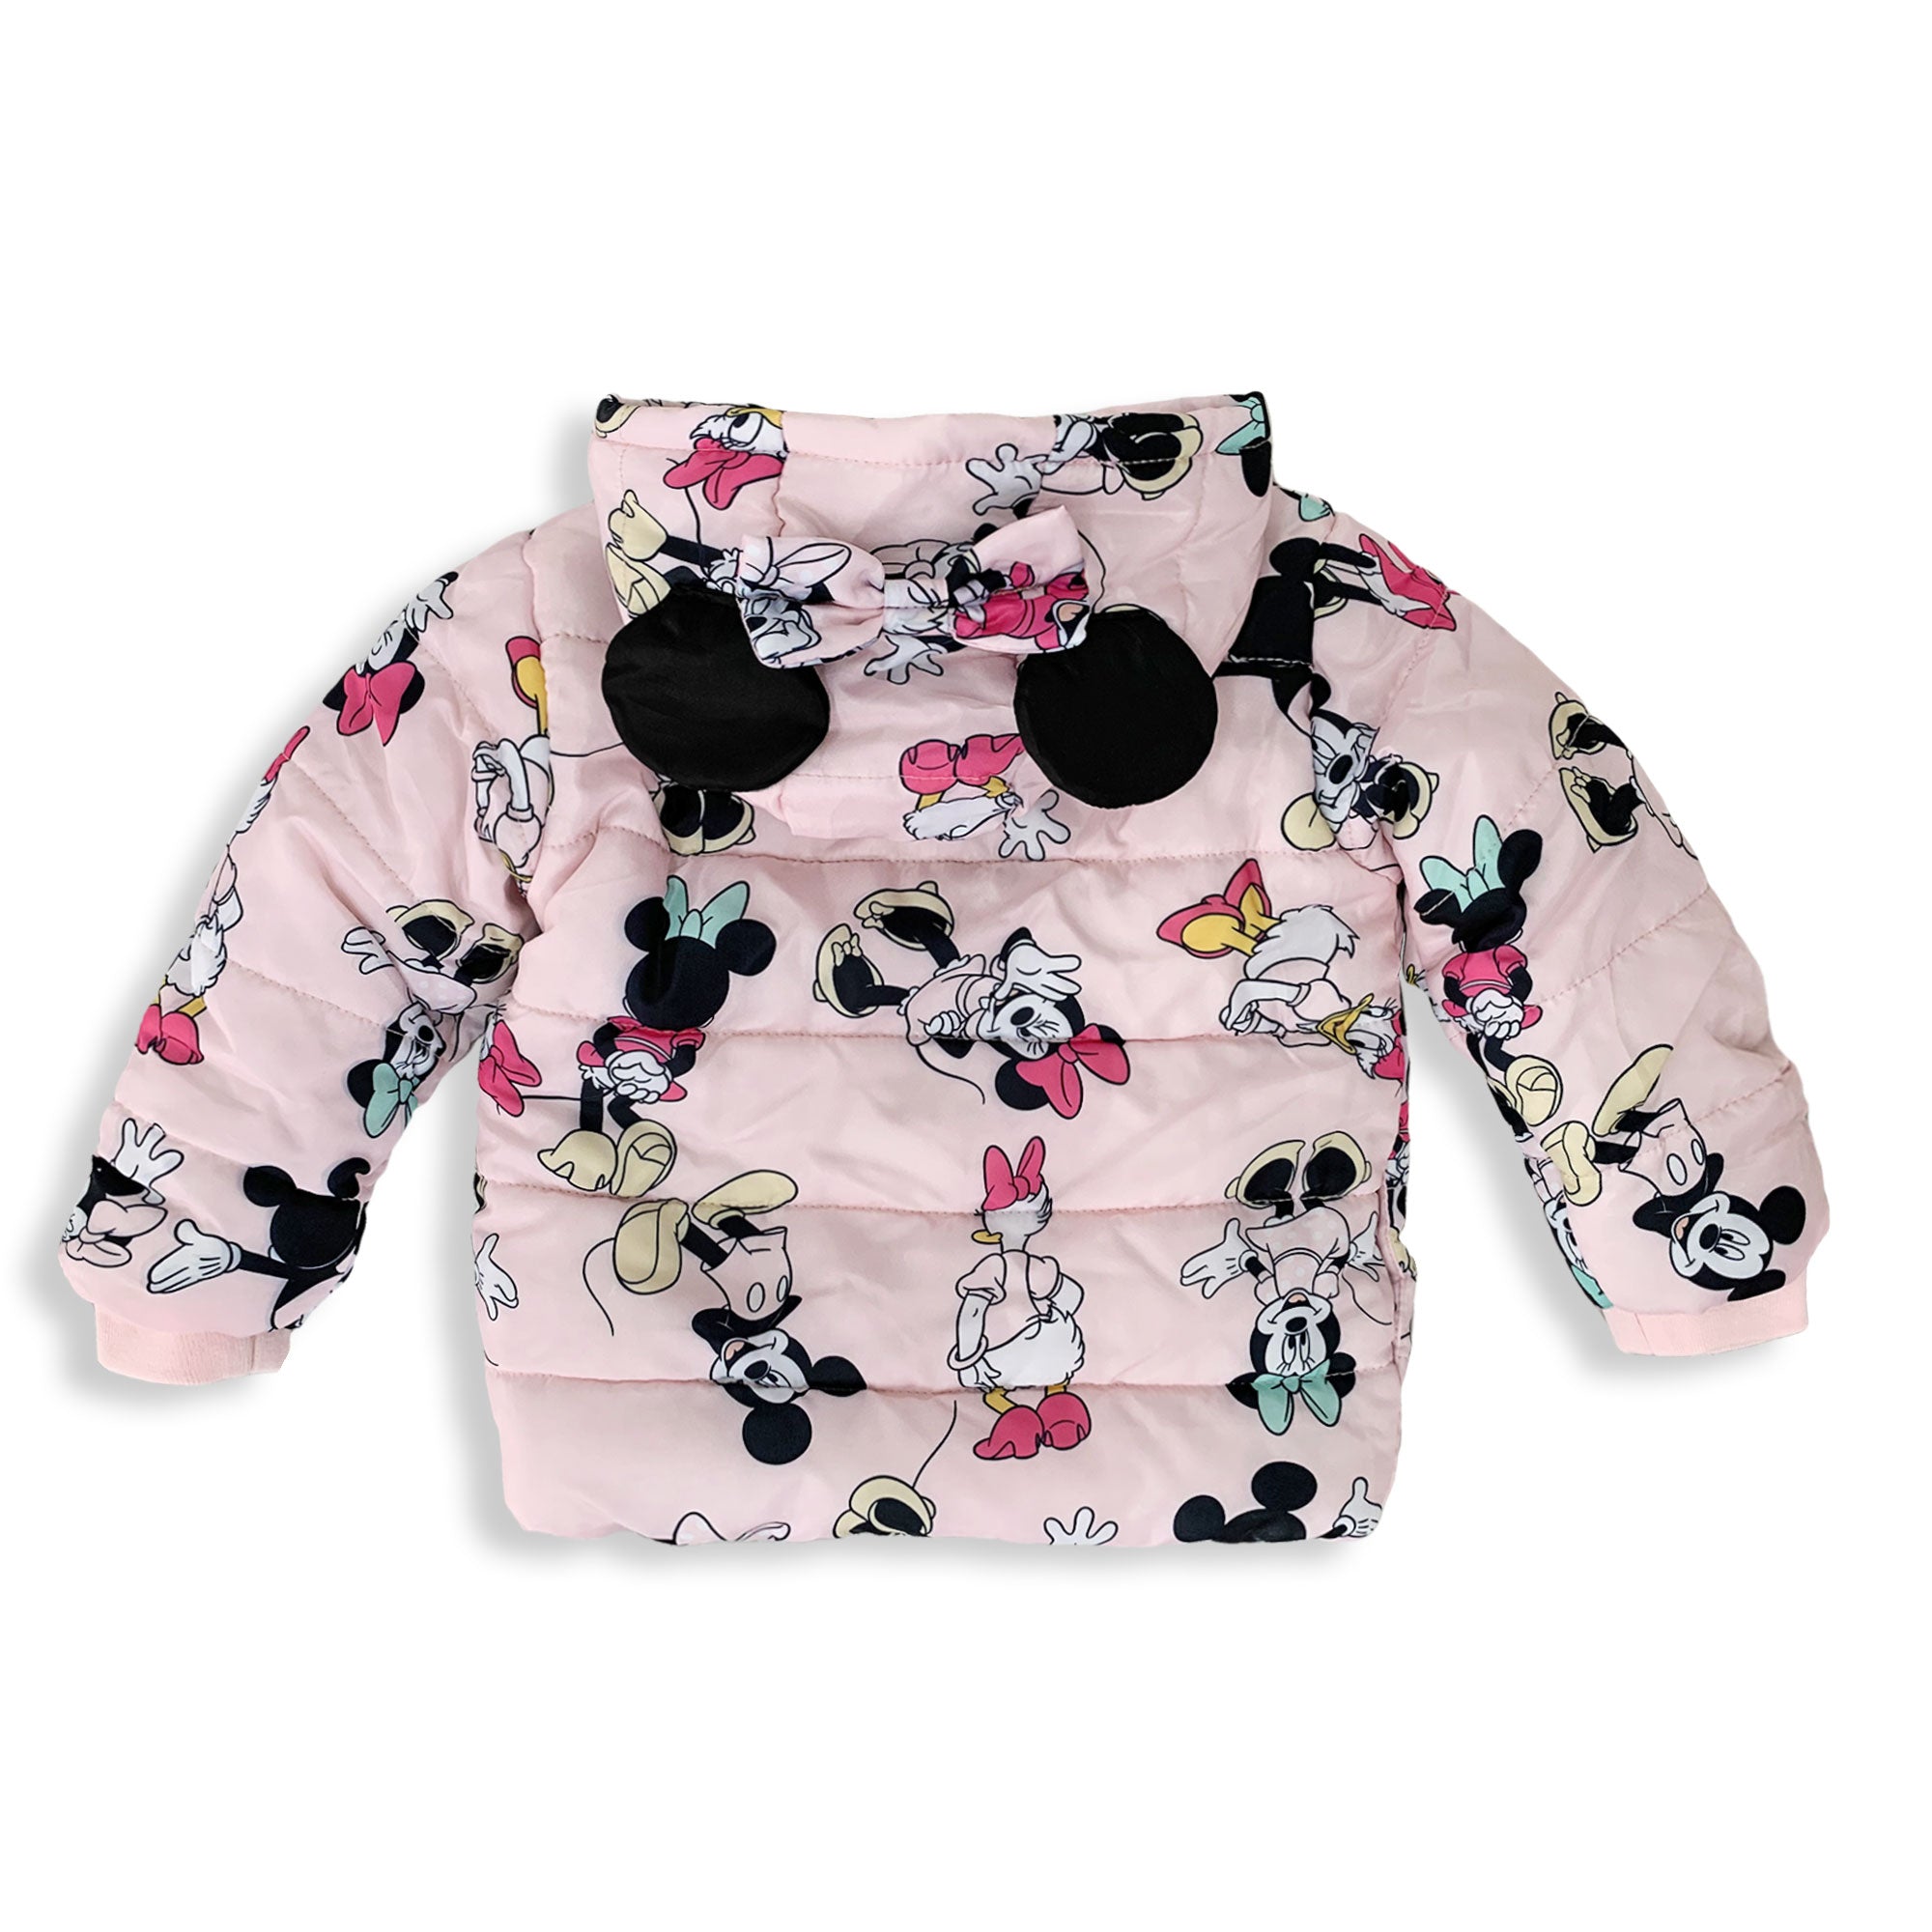 Giubbotto neonato invernale Disney Minnie Mouse Bimba con cappuccio 5892